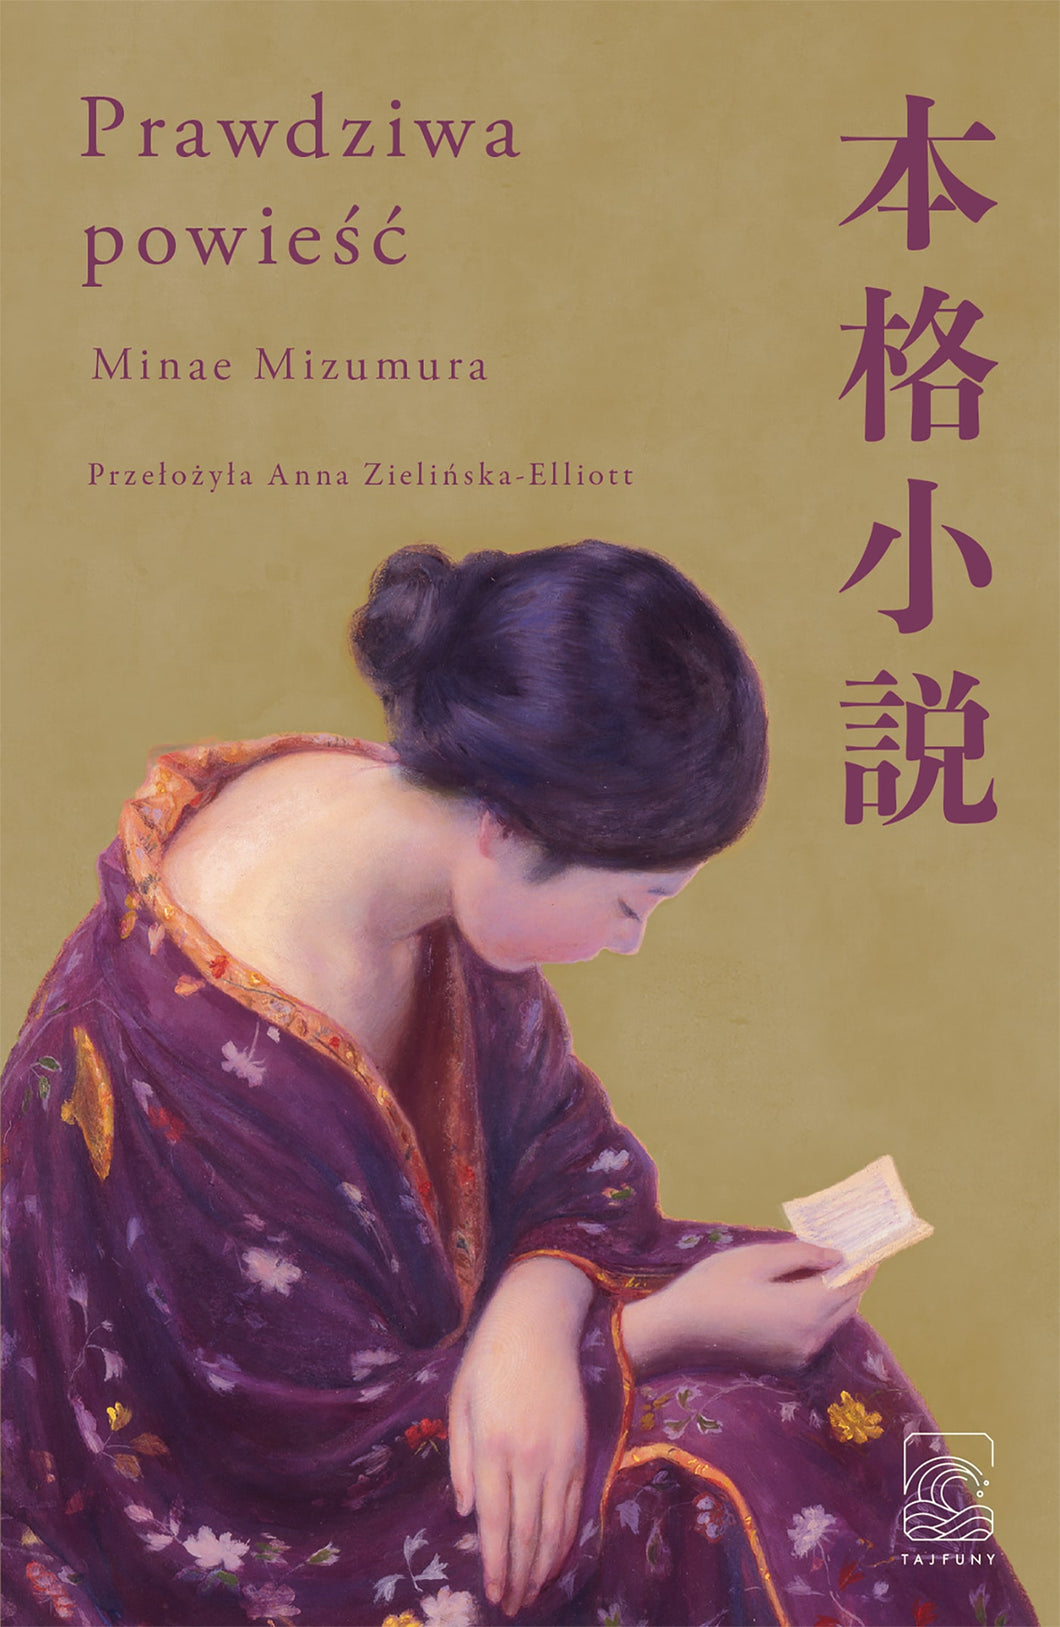 PRAWDZIWA POWIEŚĆ Minae Mizumura